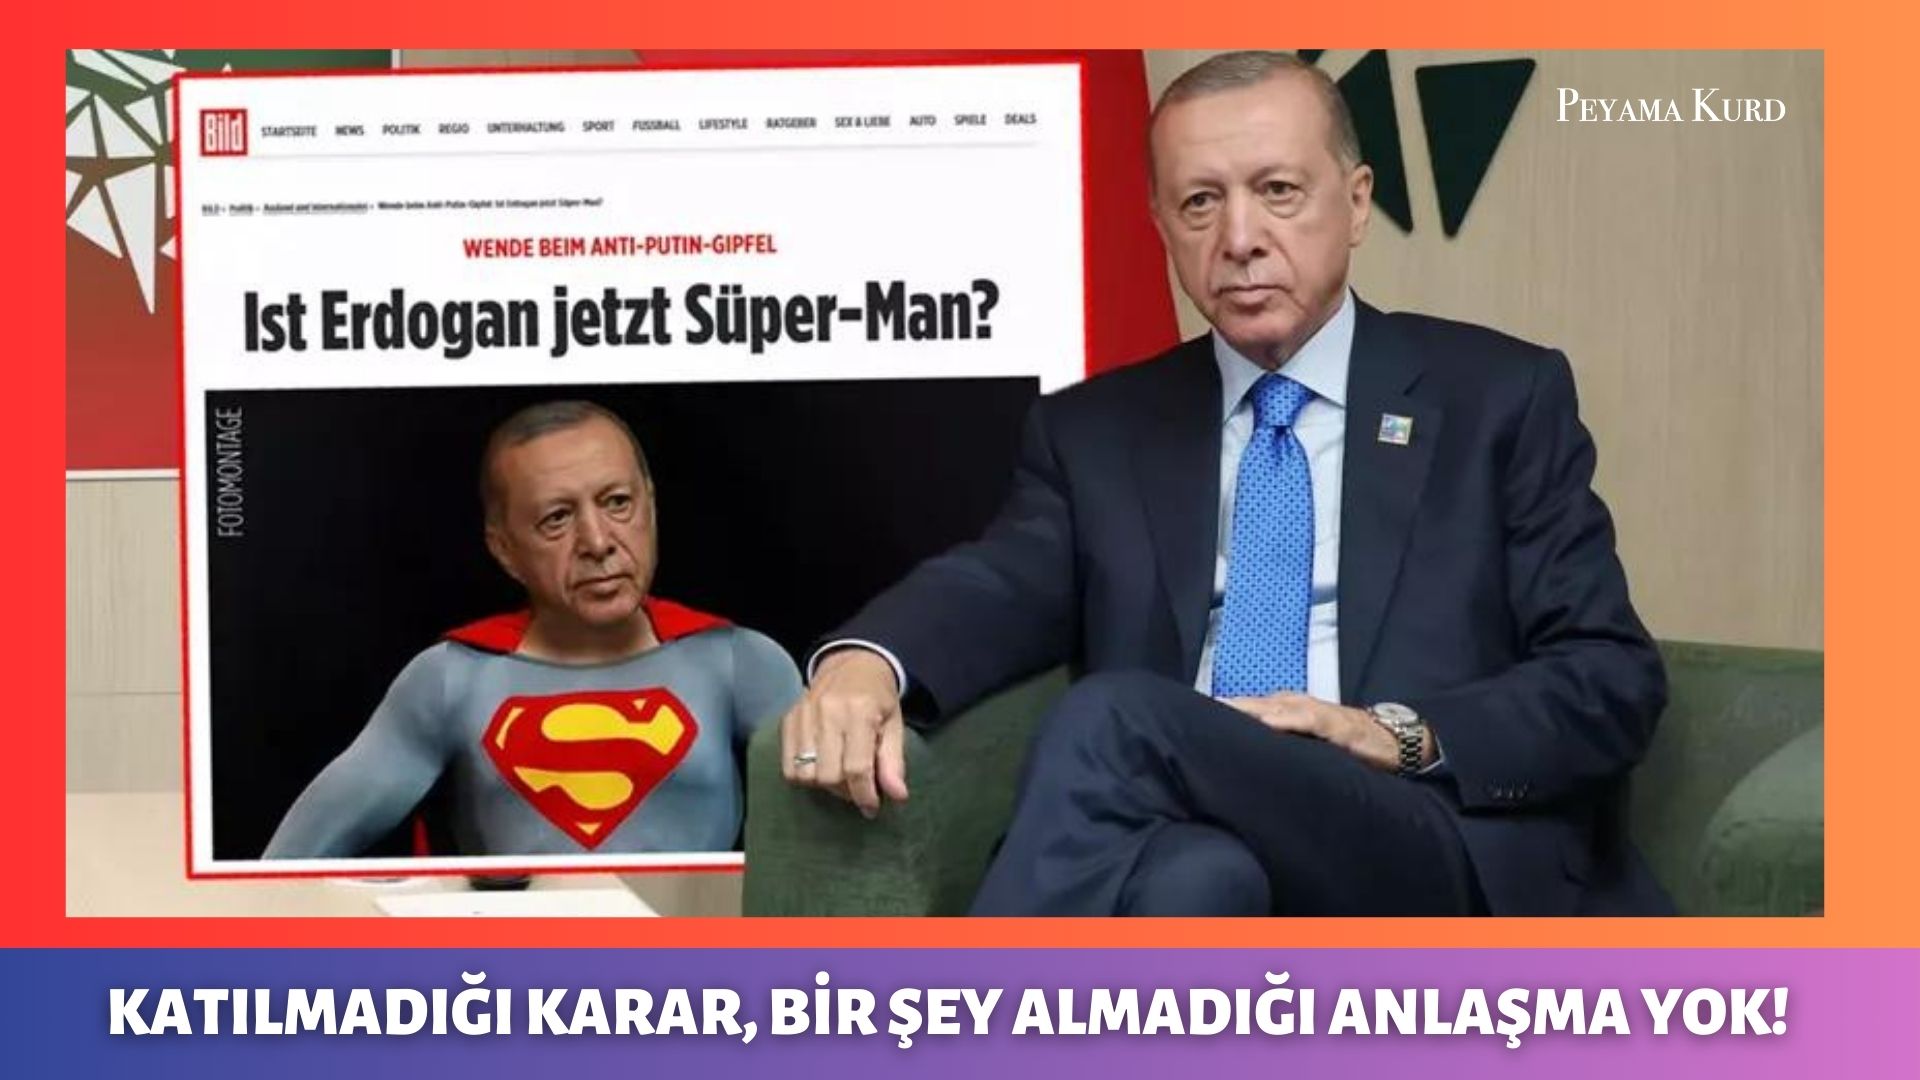 Alman Bild Gazetesi: “Erdoğan şimdi Süpermen mi?”